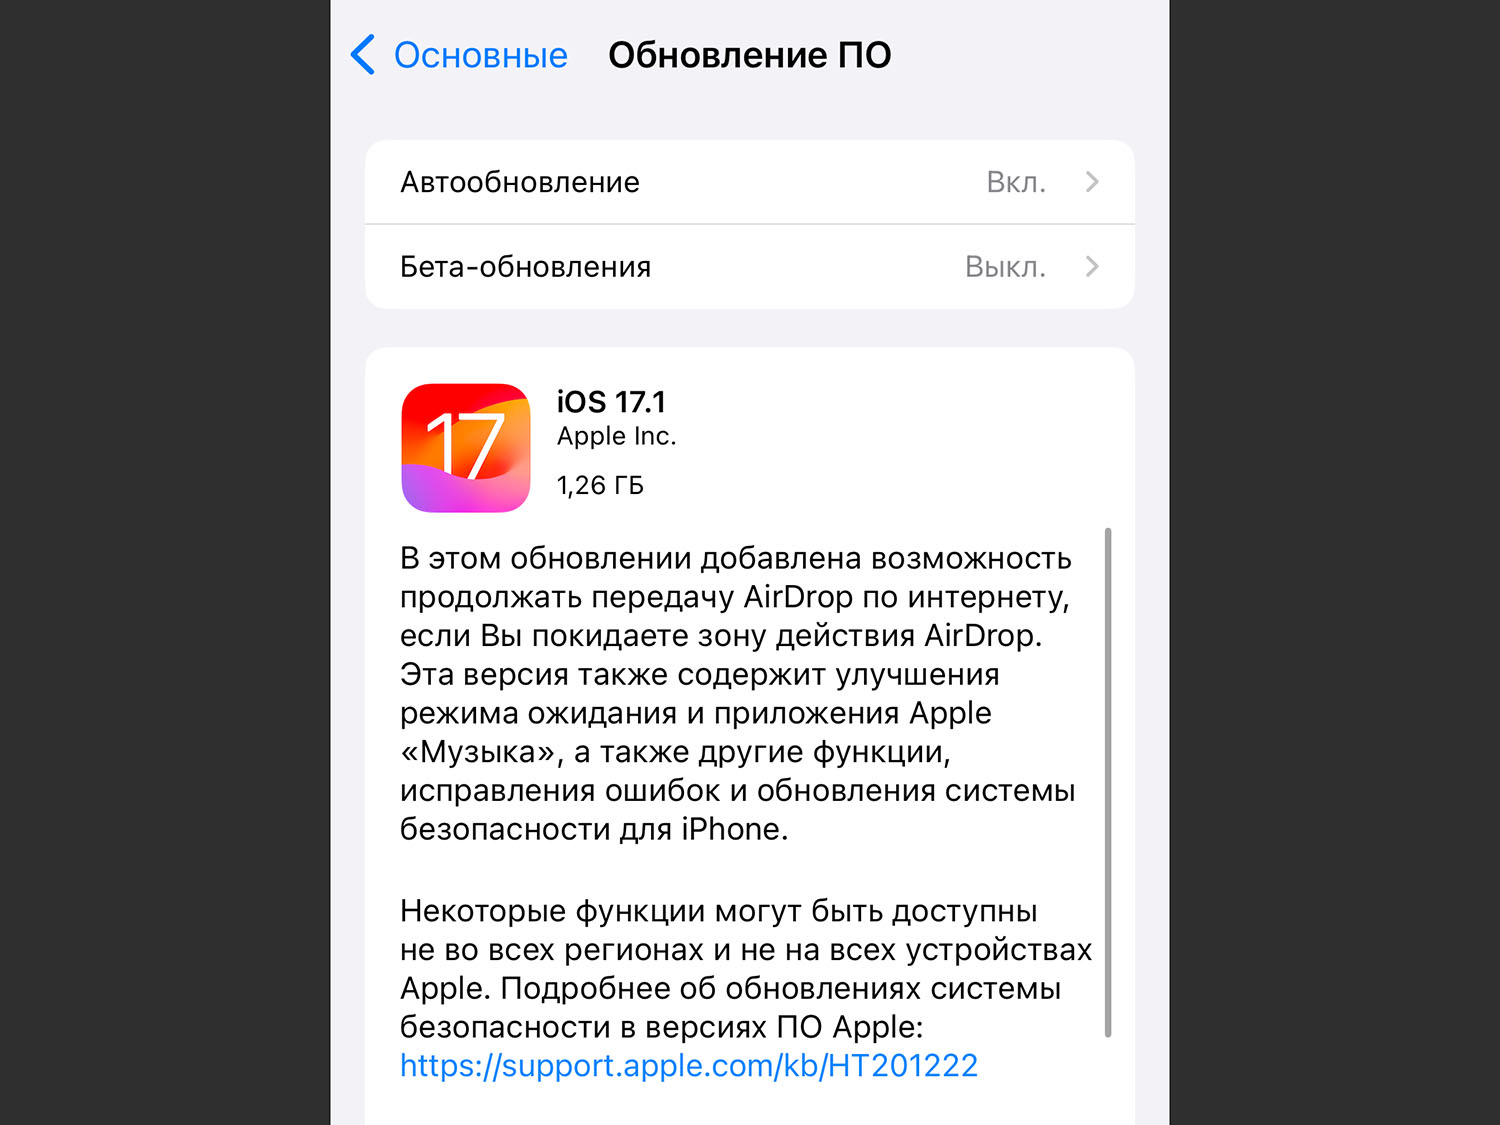 Как устанавливать приложения на iPhone в обход App Store. Это новая опция iOS 17.1